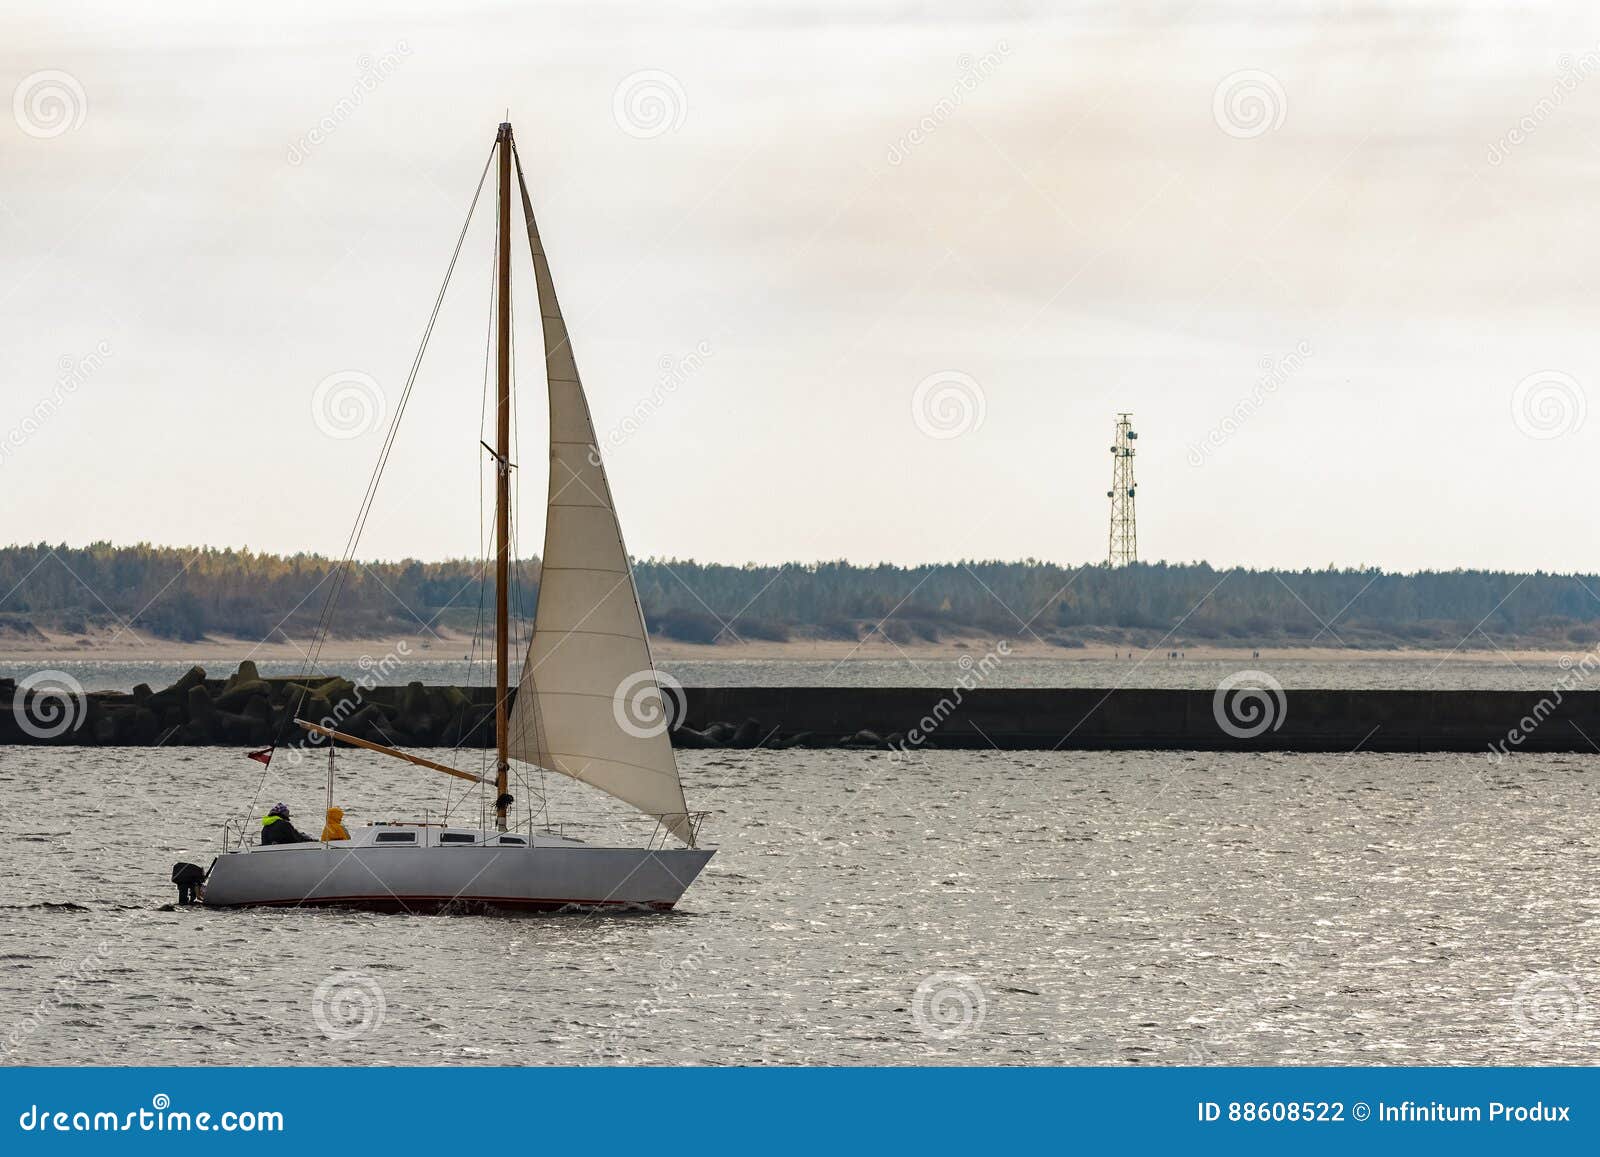 small white sailboat